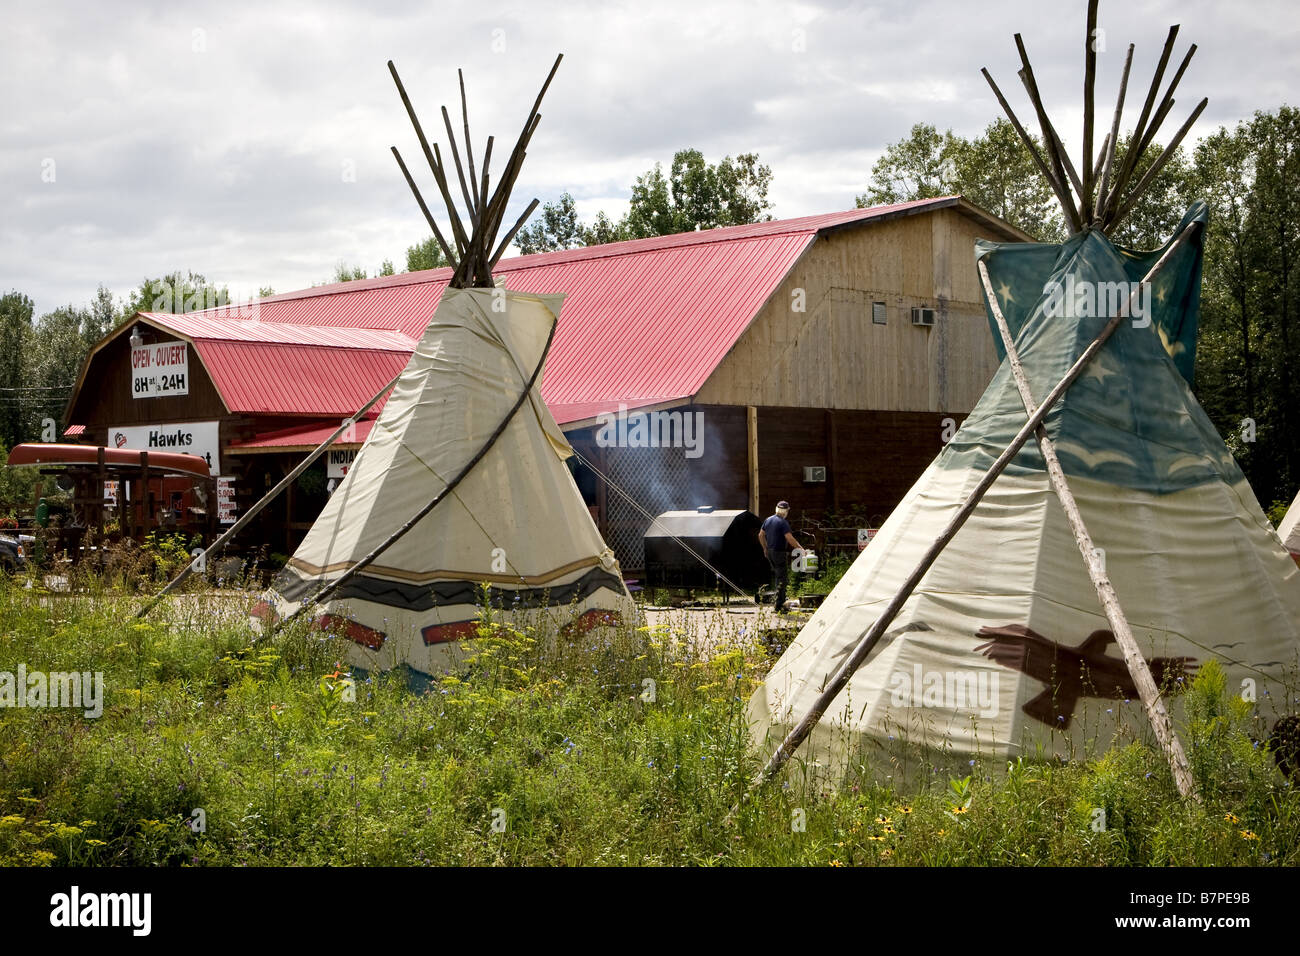 Tipis tepee teepee también están representados en un campamento en el nativo Kitigan Zibi Algonquin reserva natural en Quebec, Canadá Foto de stock